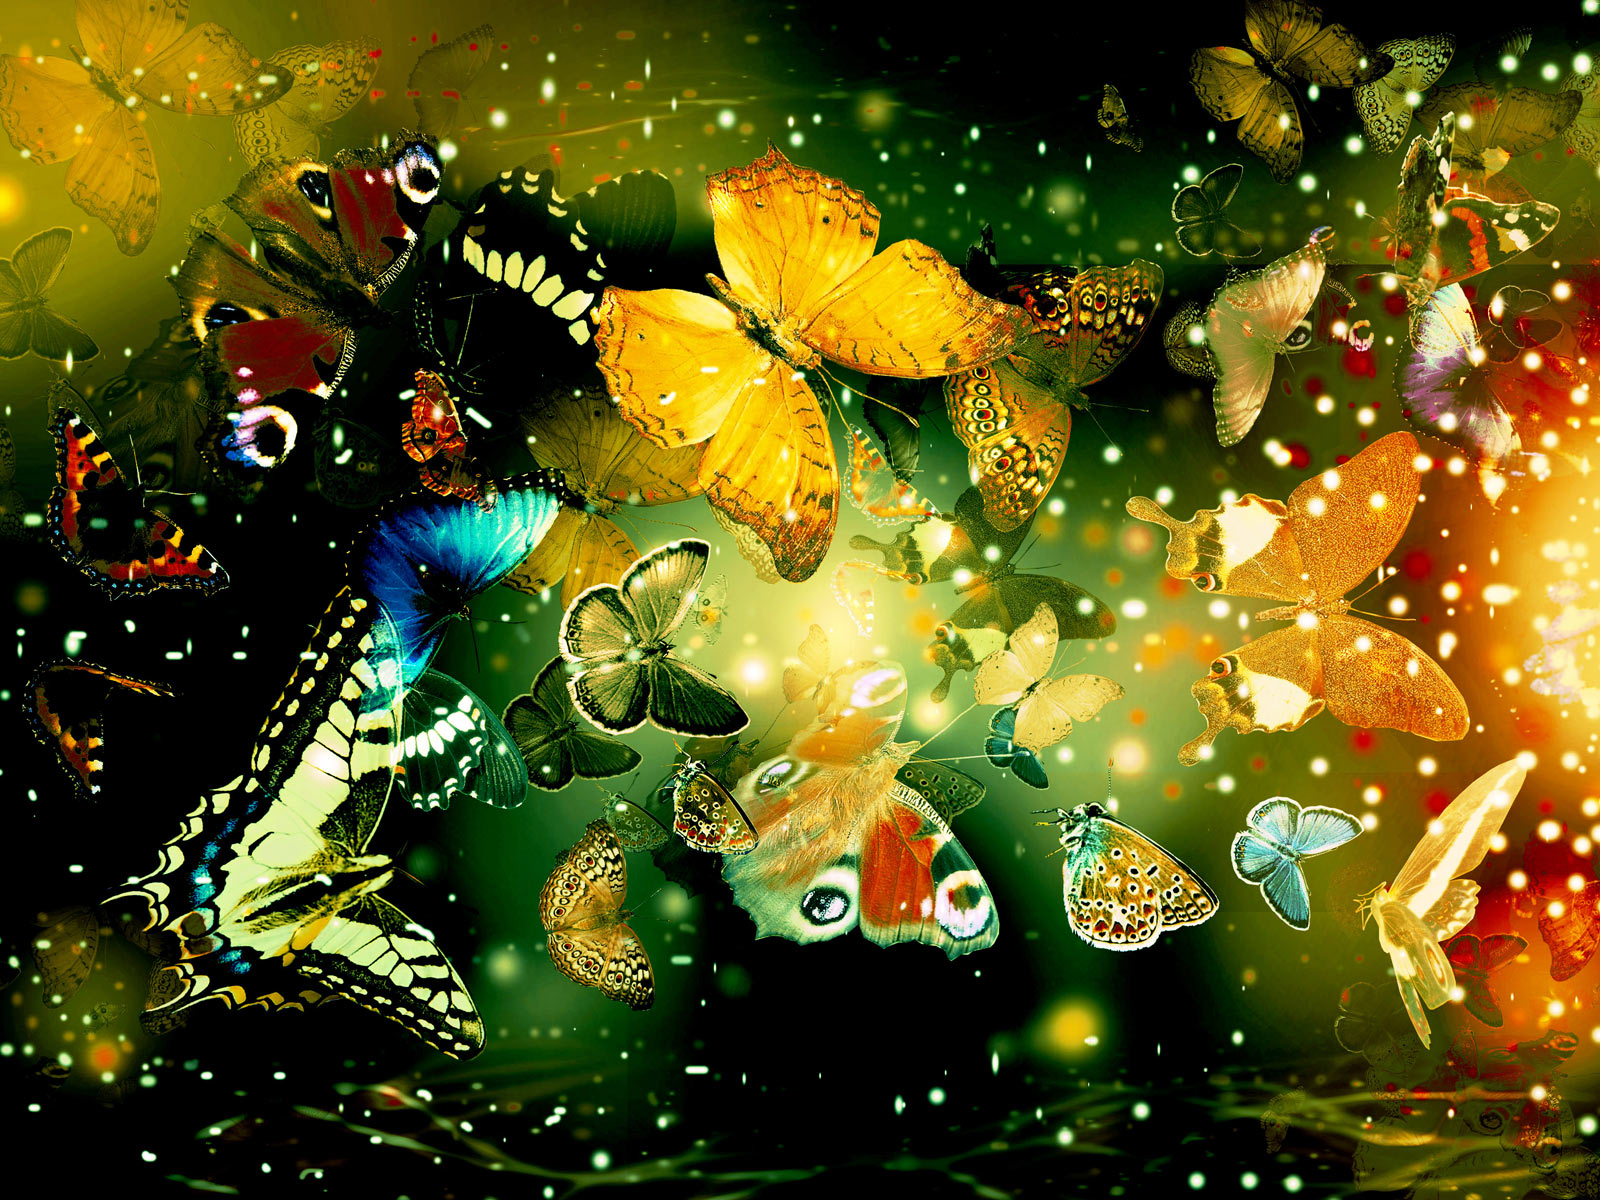 Butterflies desktop backgrounds hd Wallpaper High Quality Wallpapers